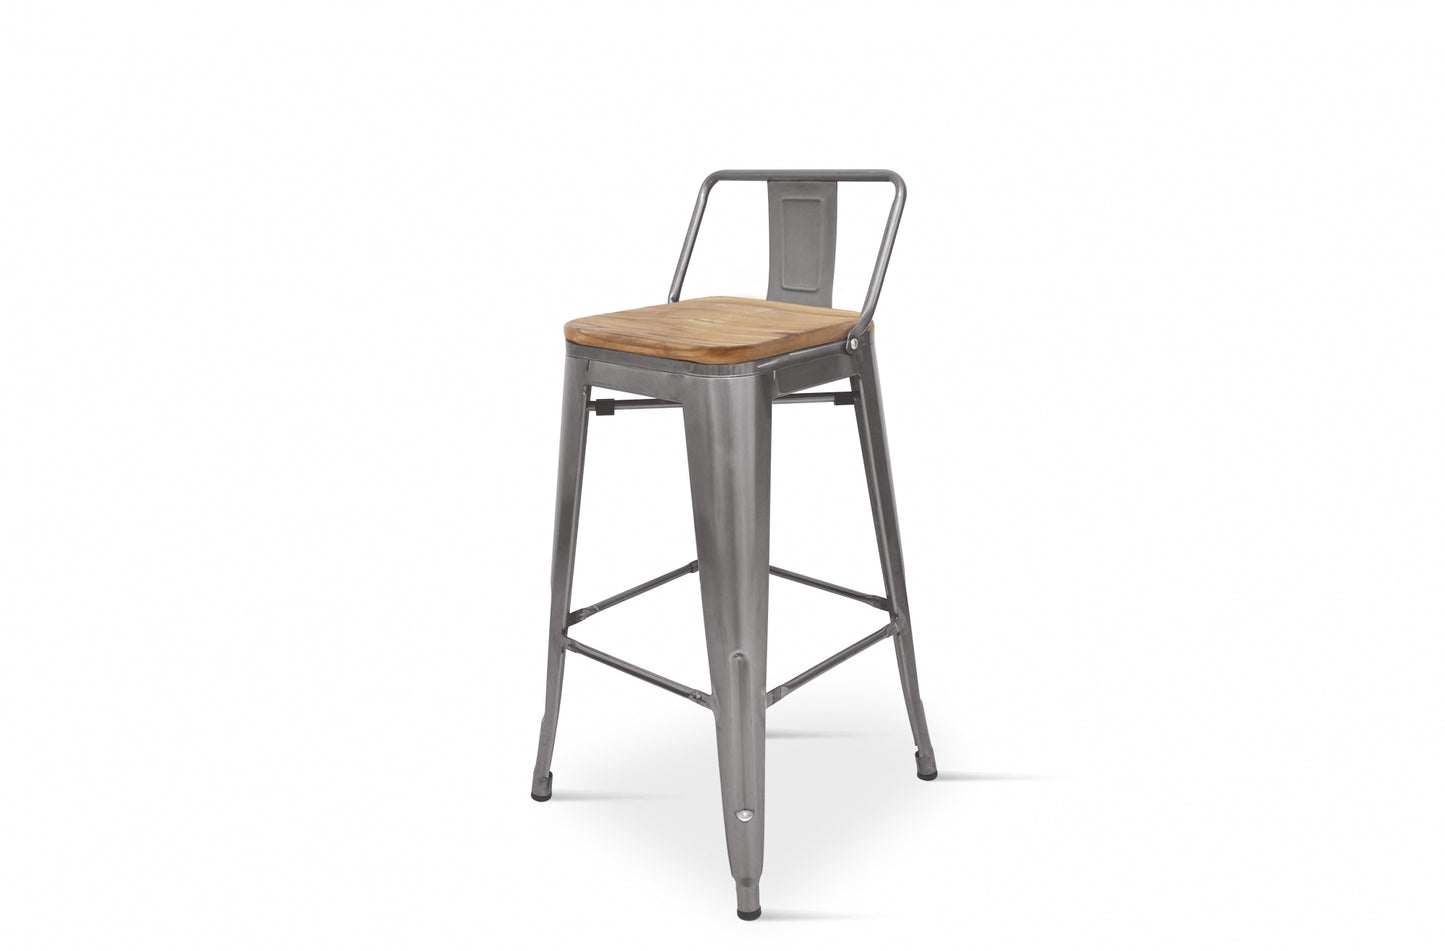 Tabouret de bar en métal brut aspect galvanisé style industriel avec dossier et assise en bois clair - Hauteur 66 cm